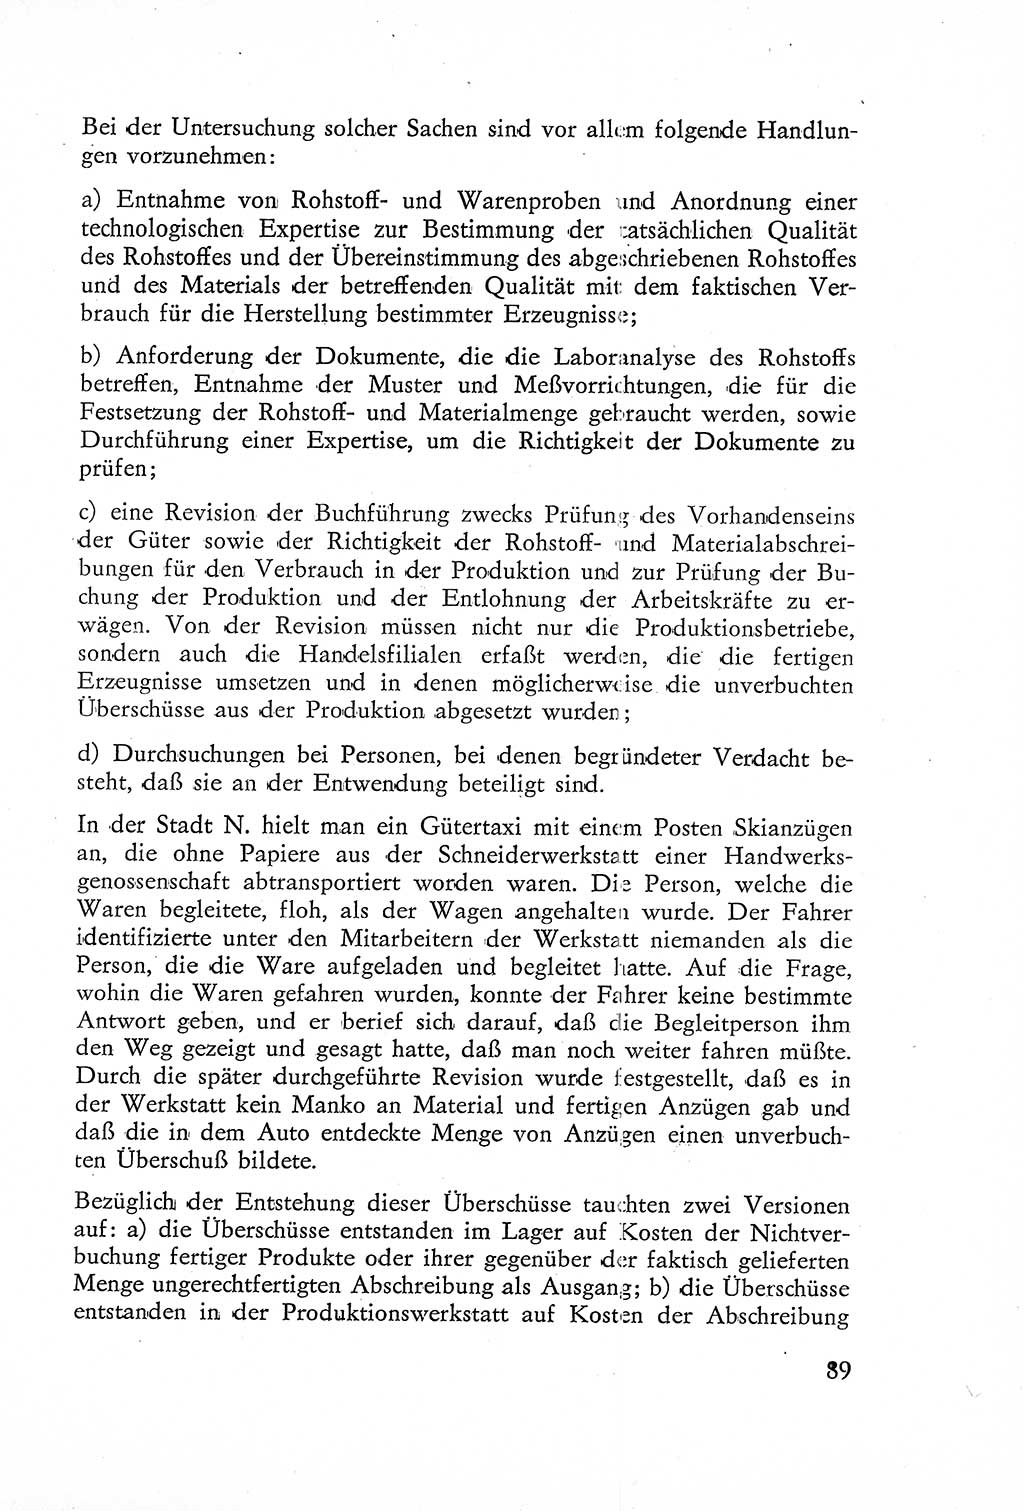 Die Untersuchung einzelner Verbrechensarten [Deutsche Demokratische Republik (DDR)] 1960, Seite 89 (Unters. Verbr.-Art. DDR 1960, S. 89)